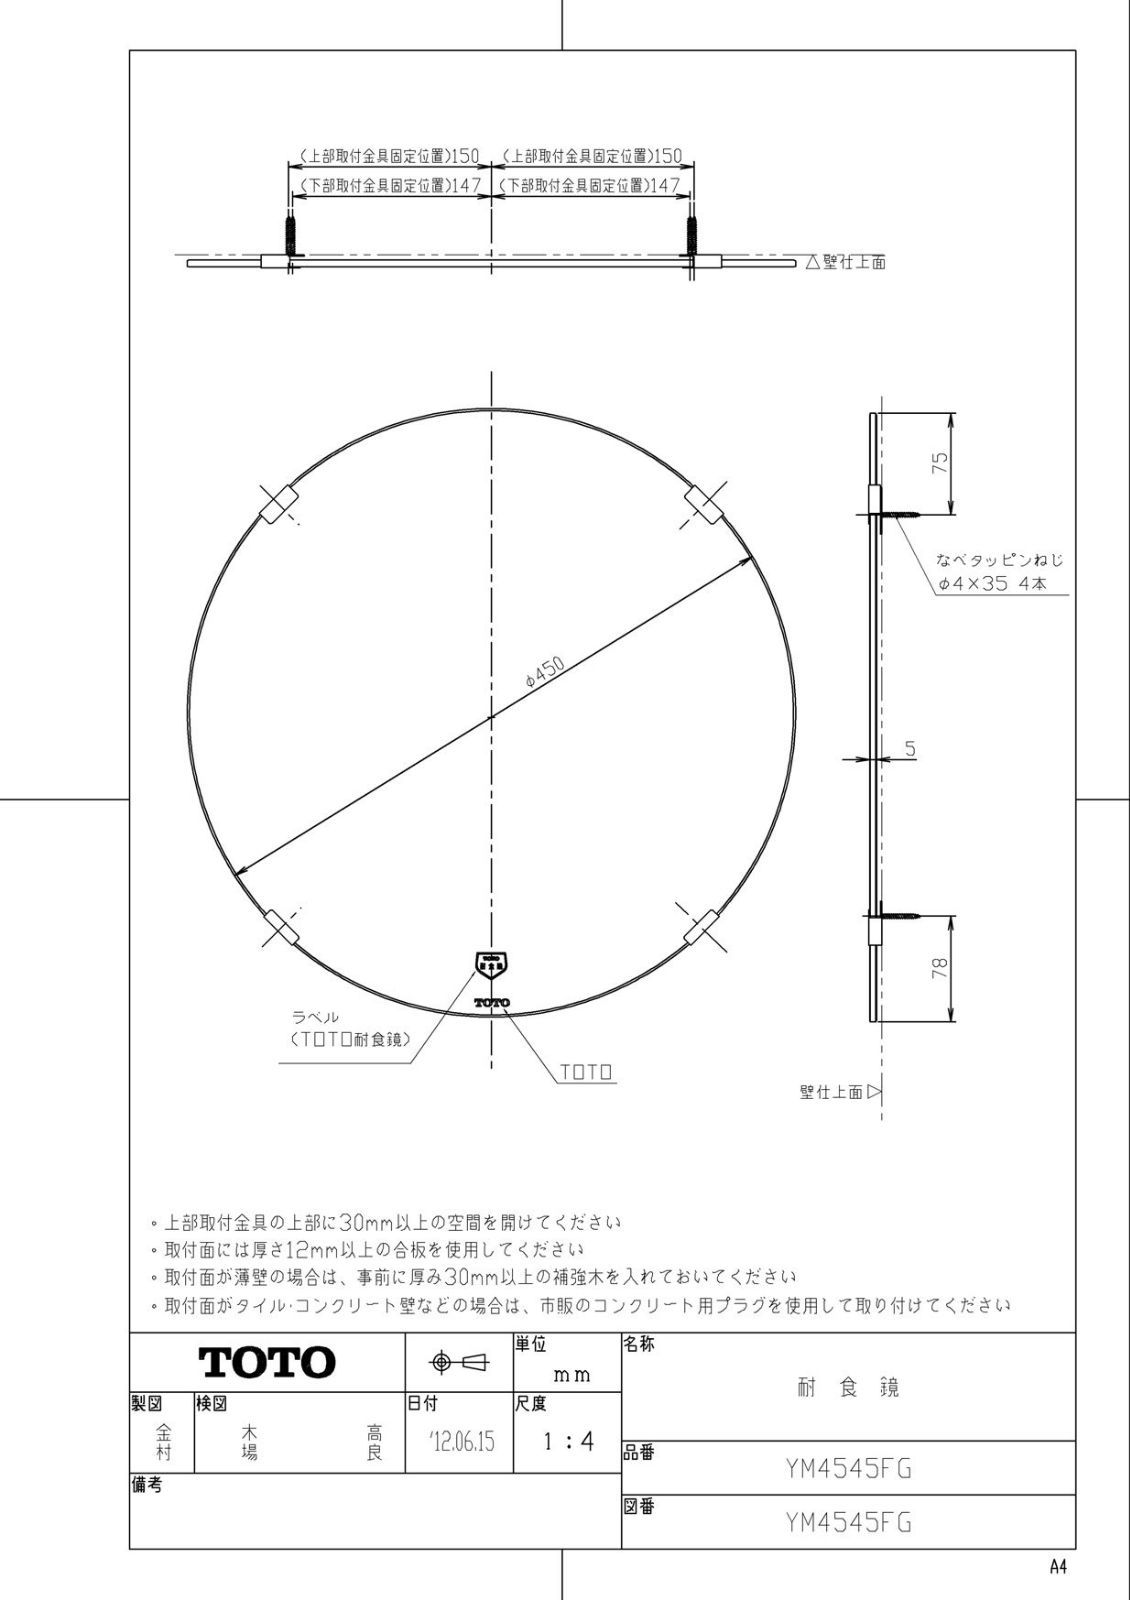 TOTO 耐食鏡 アーチ形450x1000 YM4510FA - 4